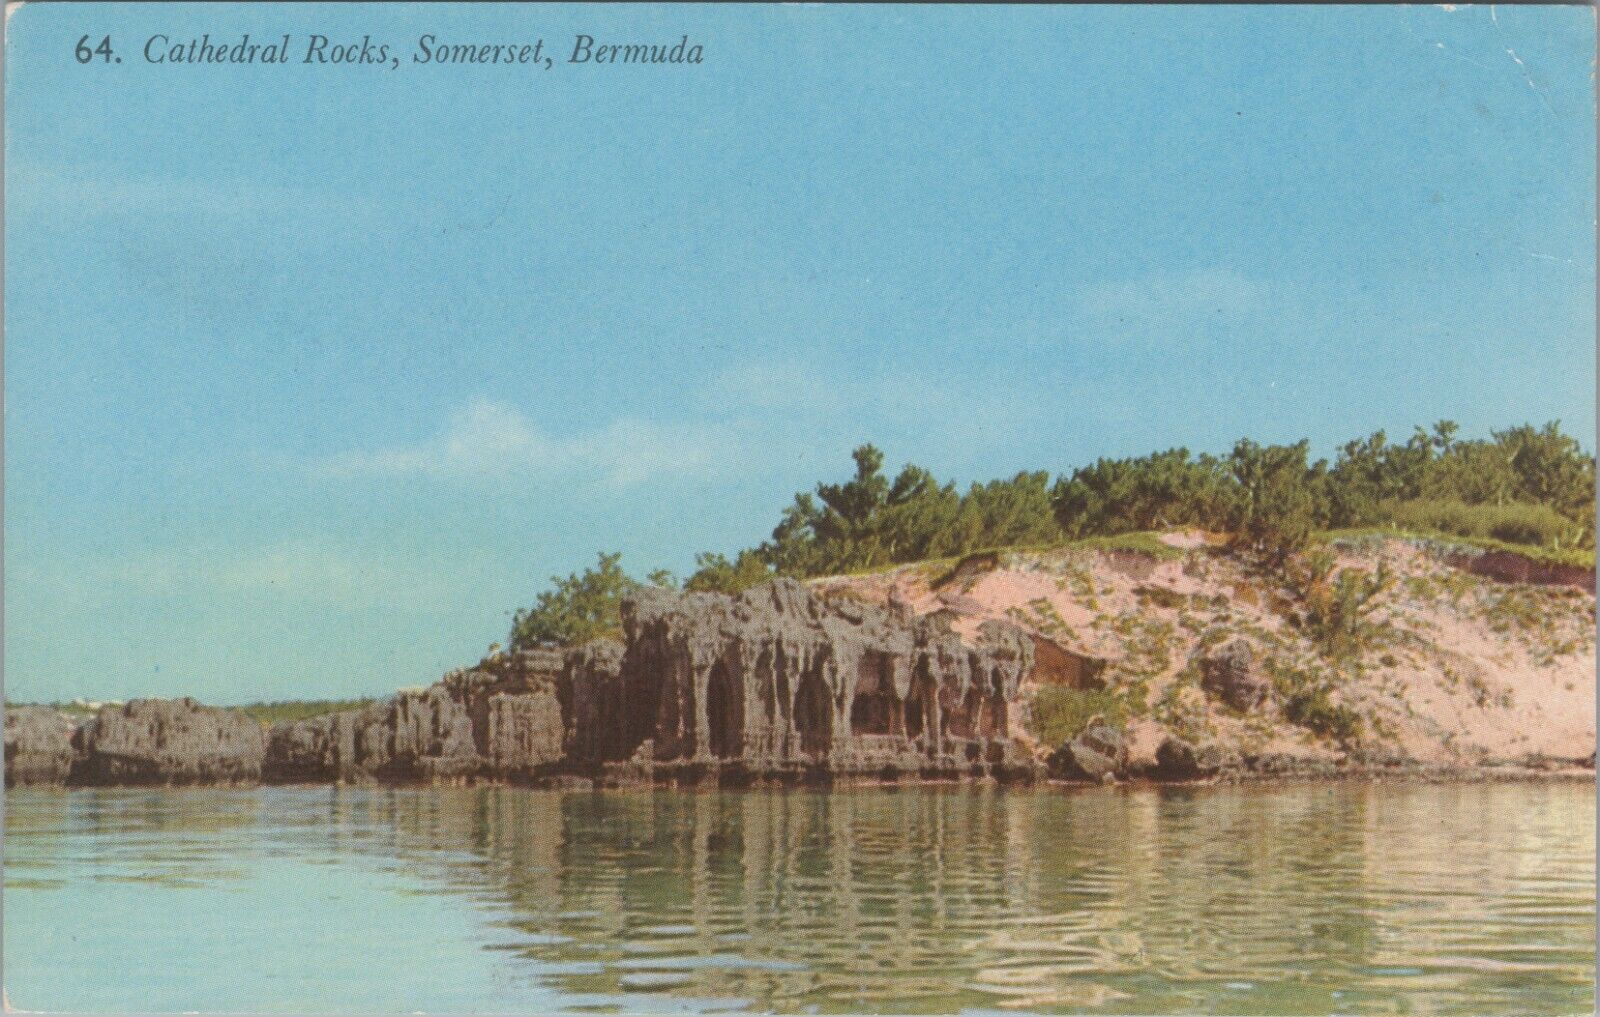 Cathedral Rocks Somerset Bermuda Scenic Lake Scene Chrome Vintage Post Card